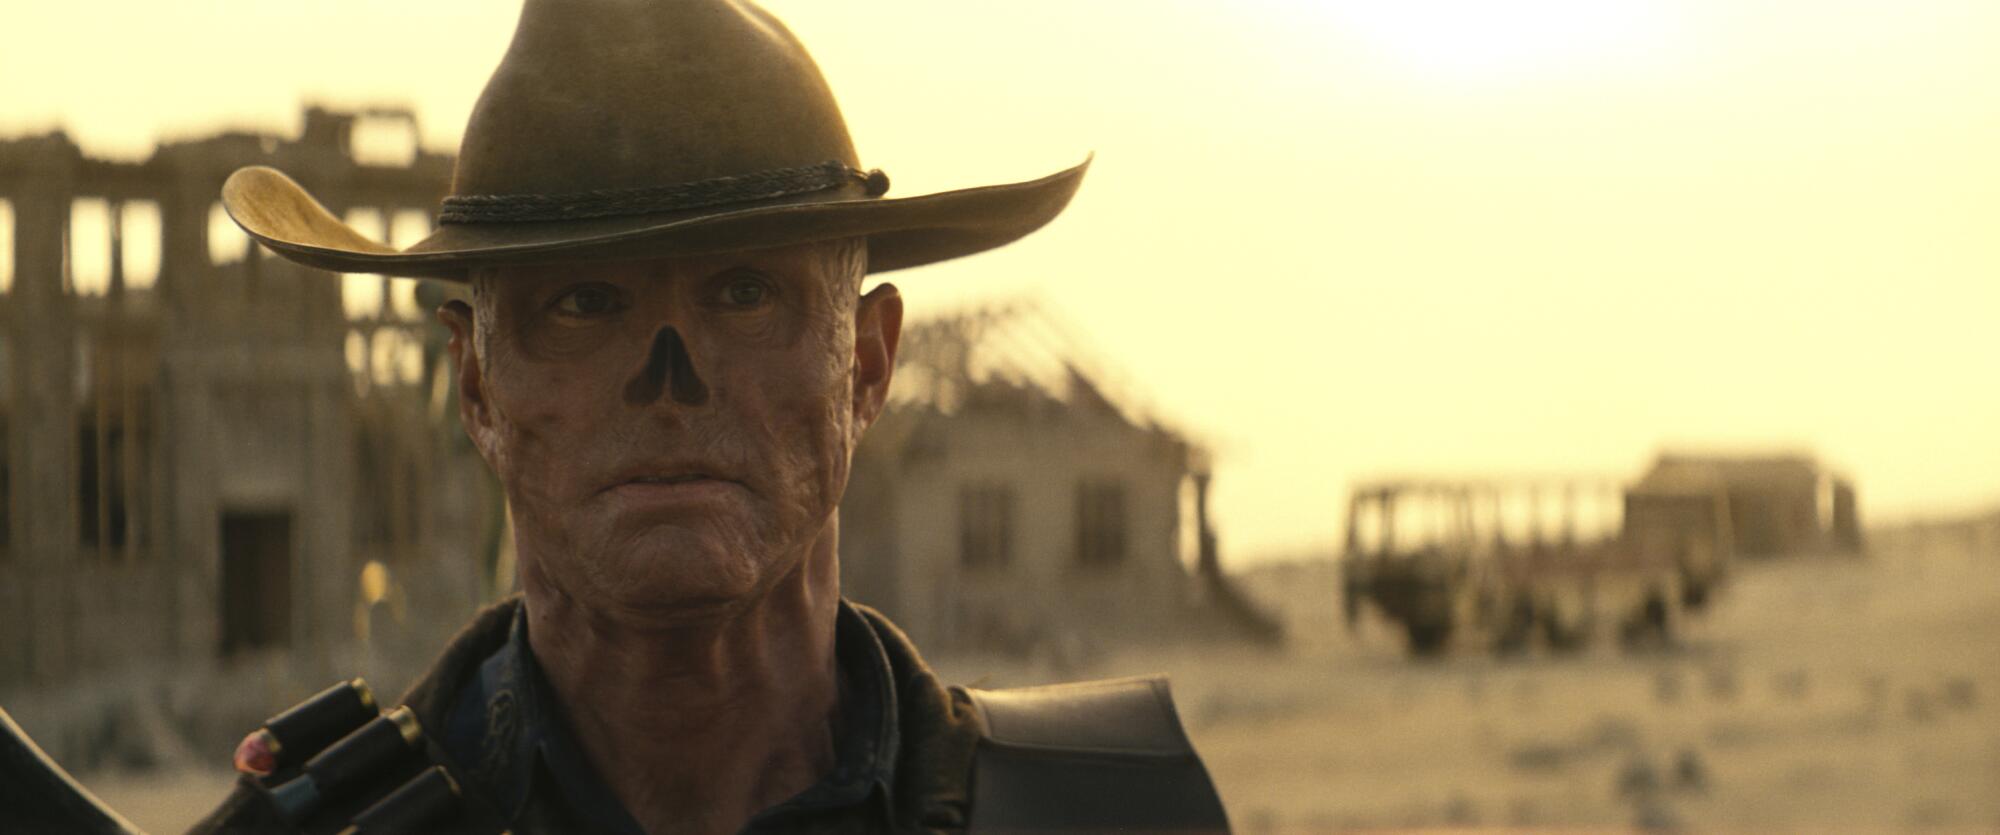 Um ghoul com chapéu de cowboy em uma paisagem desolada.